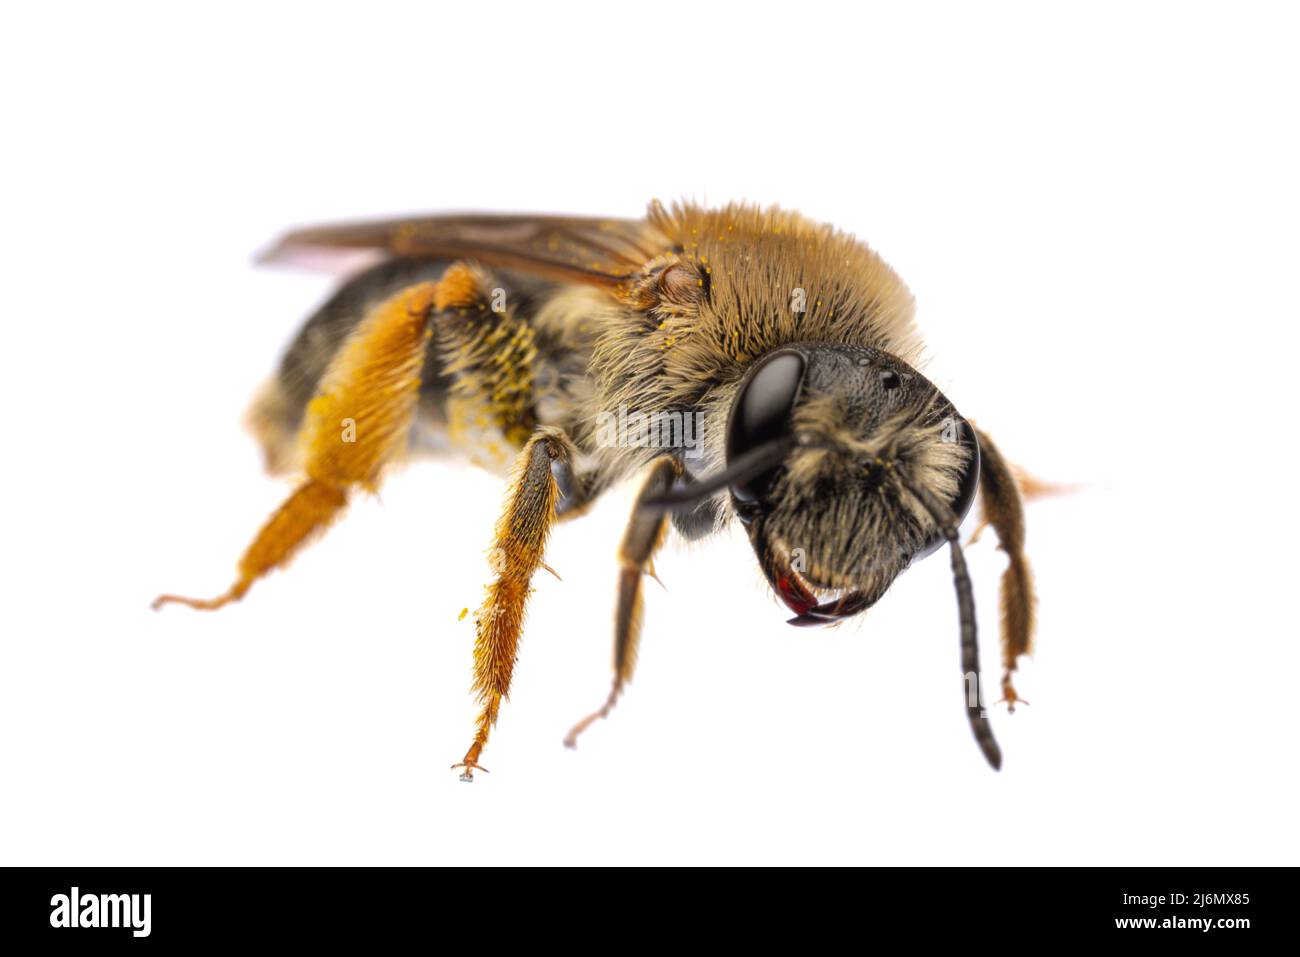 Insectos de europa - abejas: Macro de vista frontal de la hembra Andrena hemorroa (alemán Rotschopfie Sandbiene) aislado sobre fondo blanco mirando a la c Foto de stock